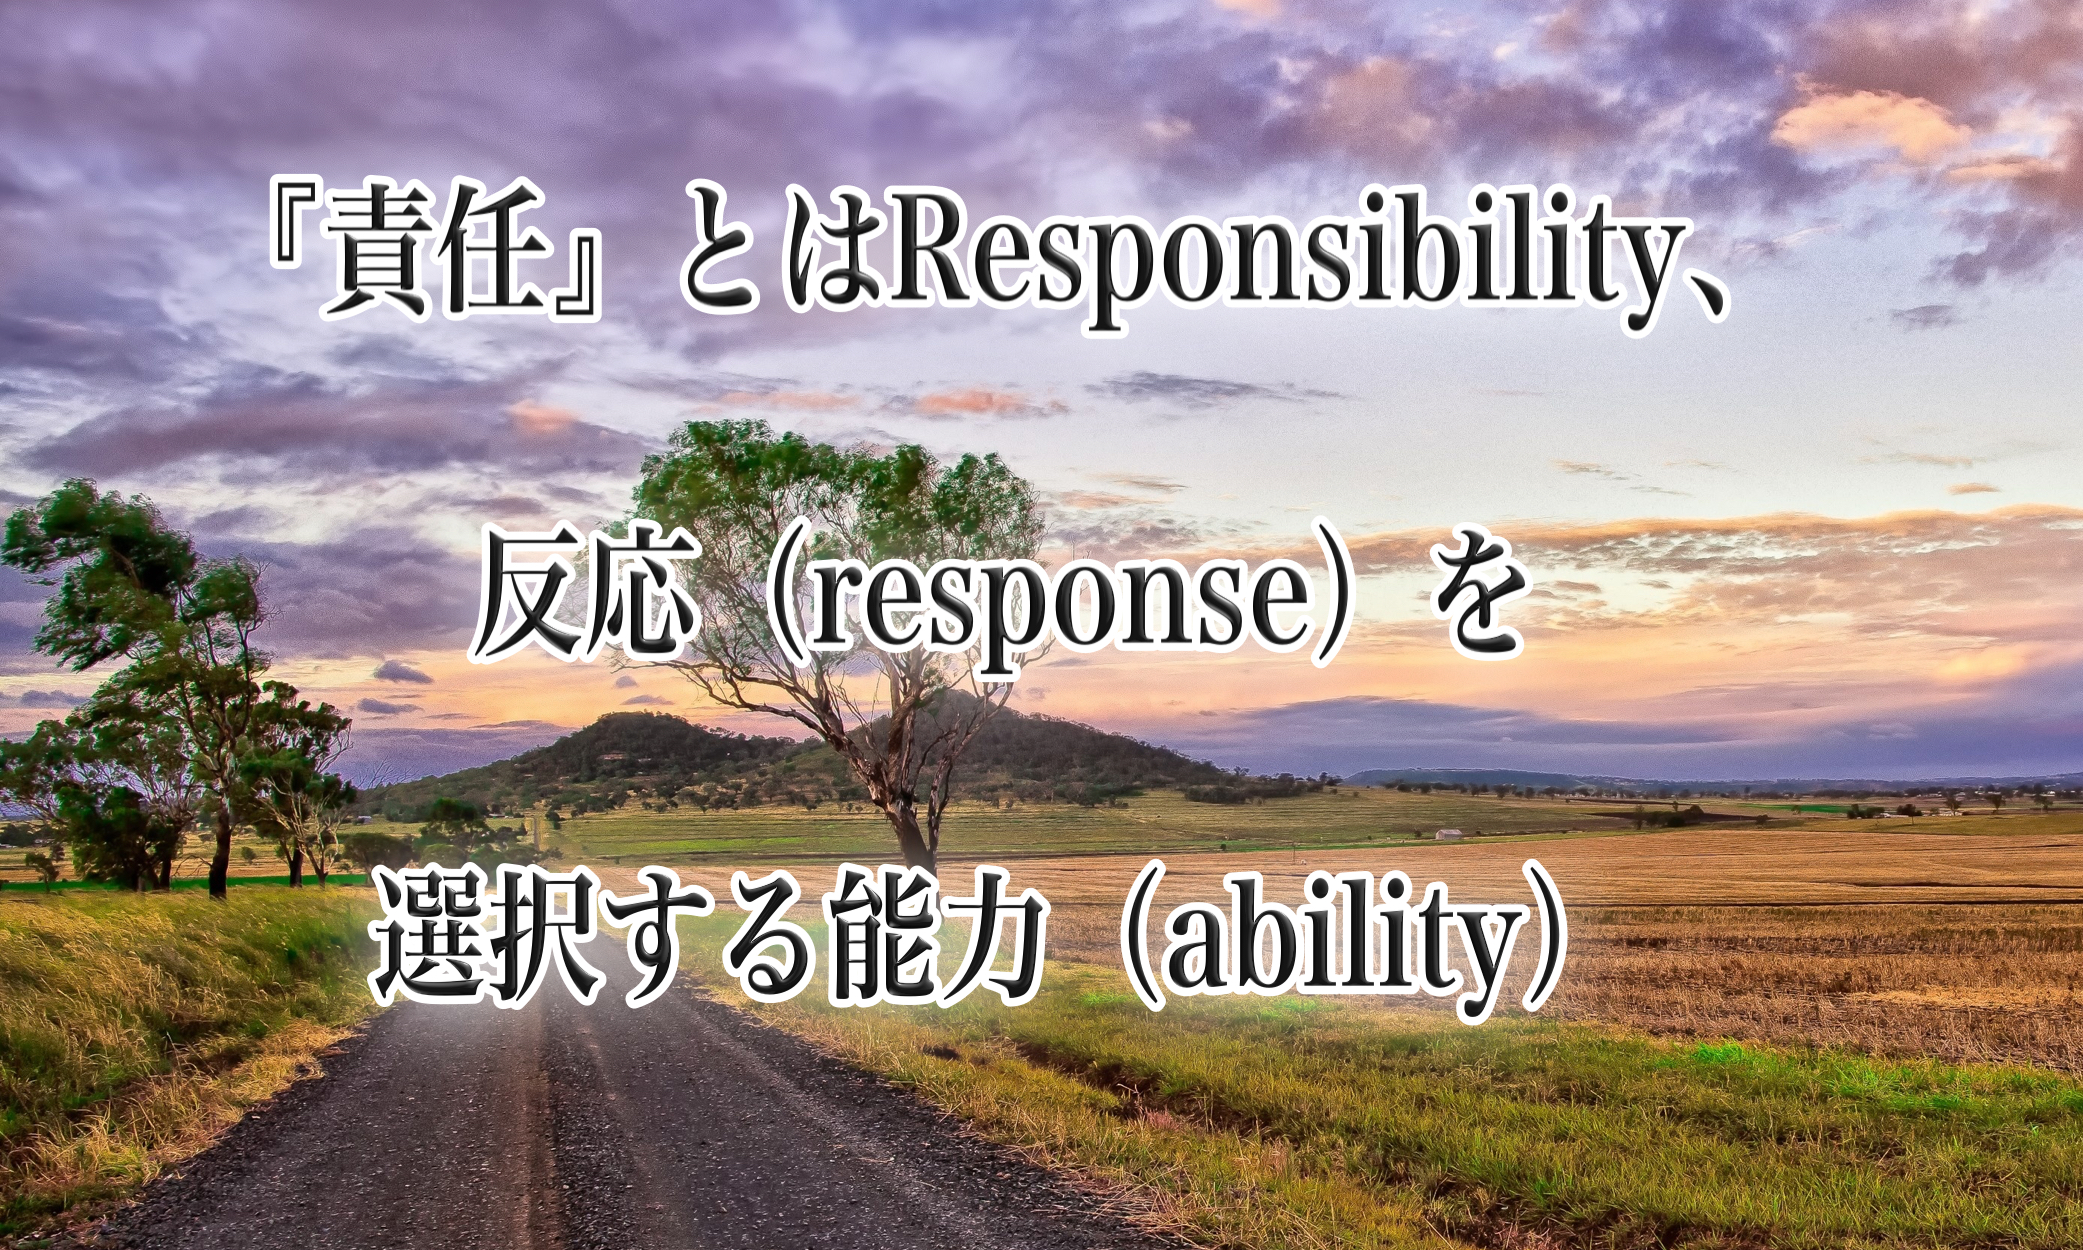 責任とは反応を選択する能力